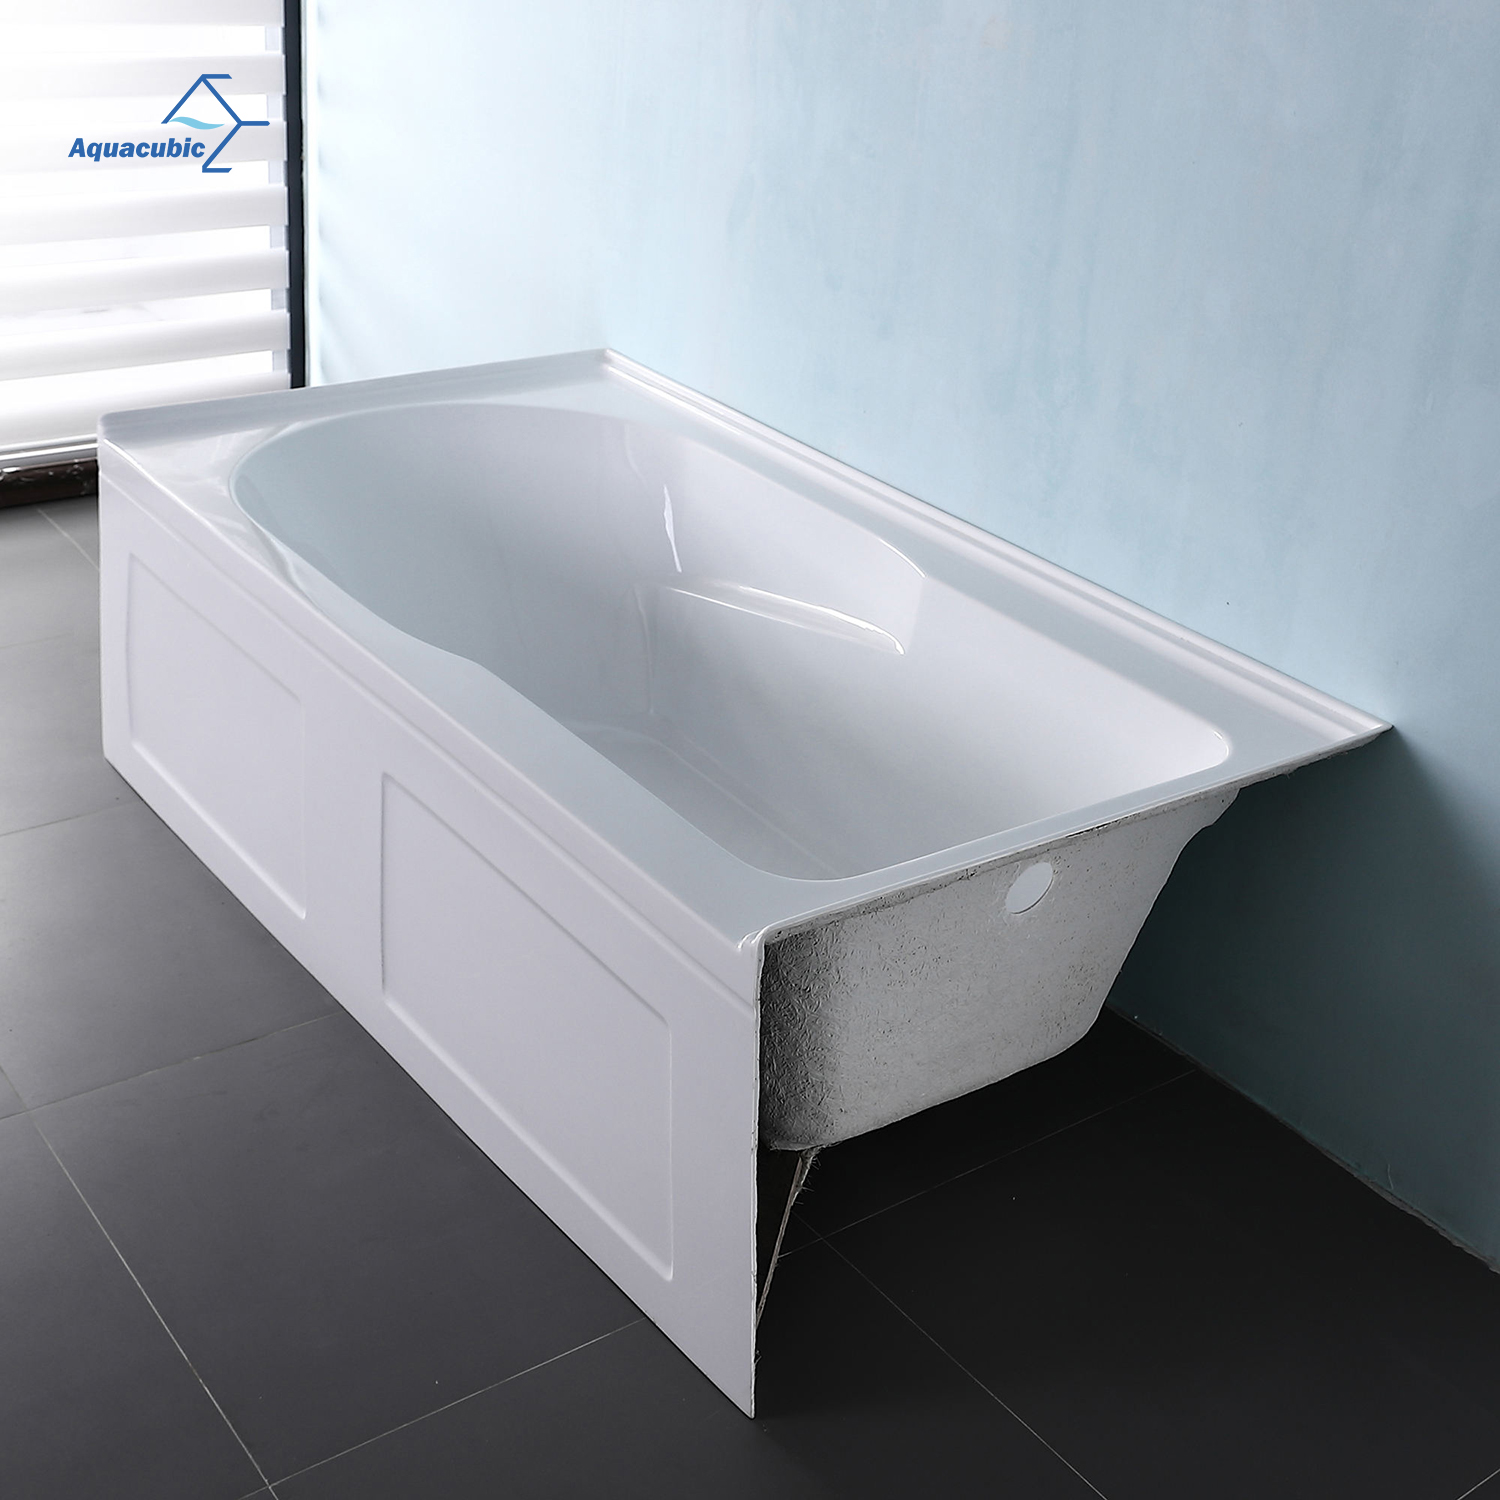 Bañera con delantal integral empotrada, bañera rectangular blanca de inmersión acrílica de una pieza para proyecto